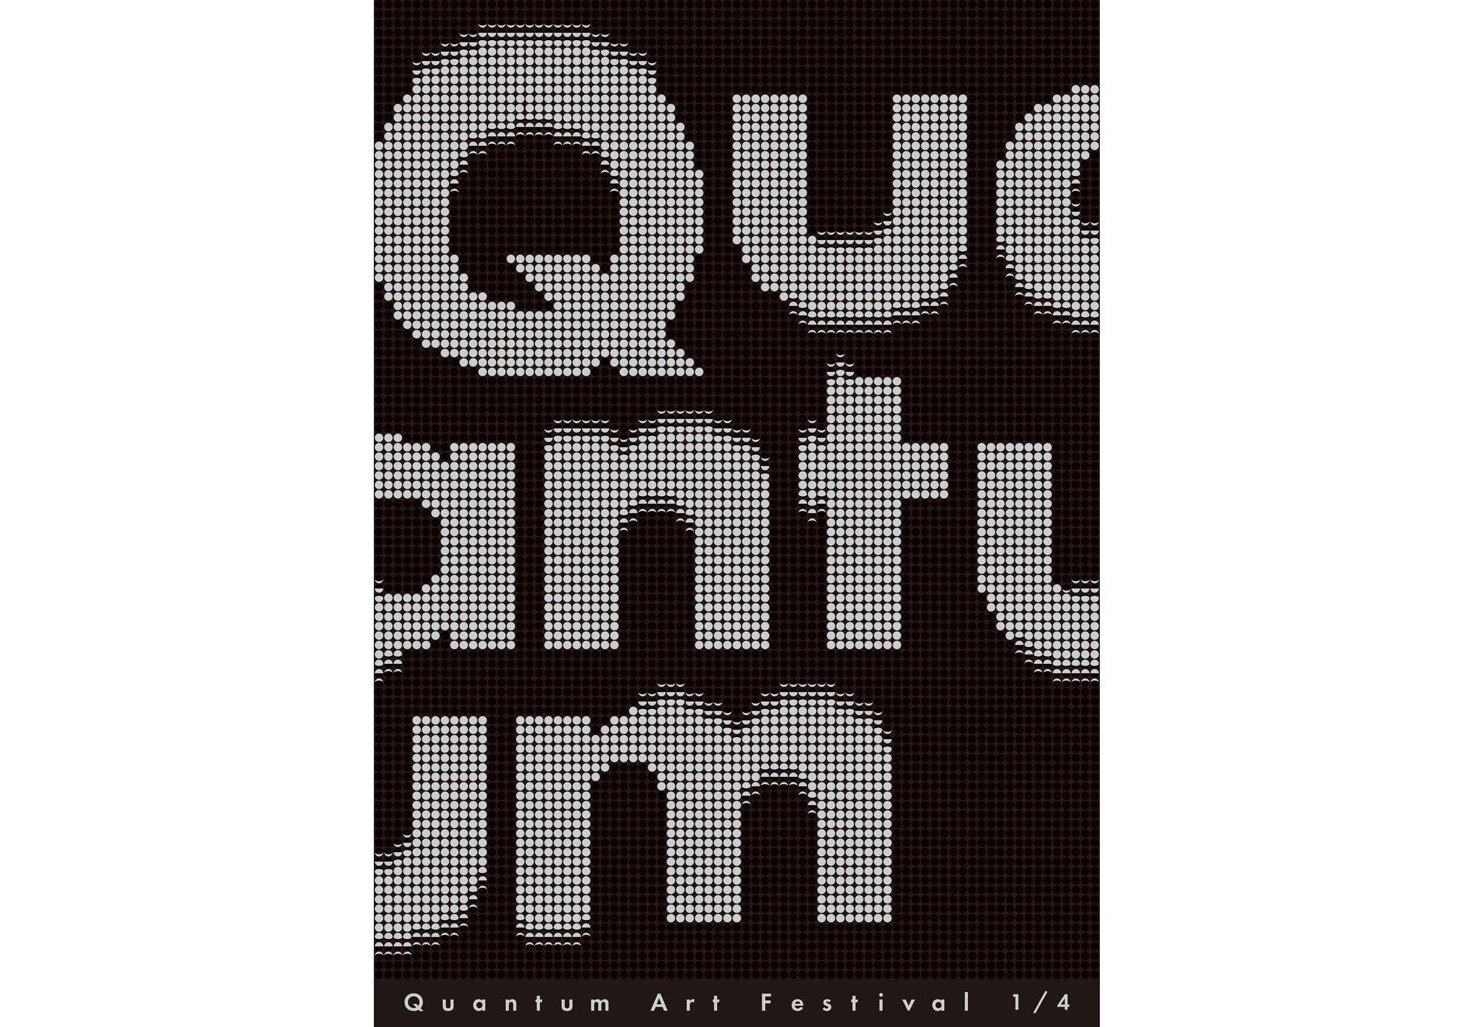 Quantum Art Festival 1/4